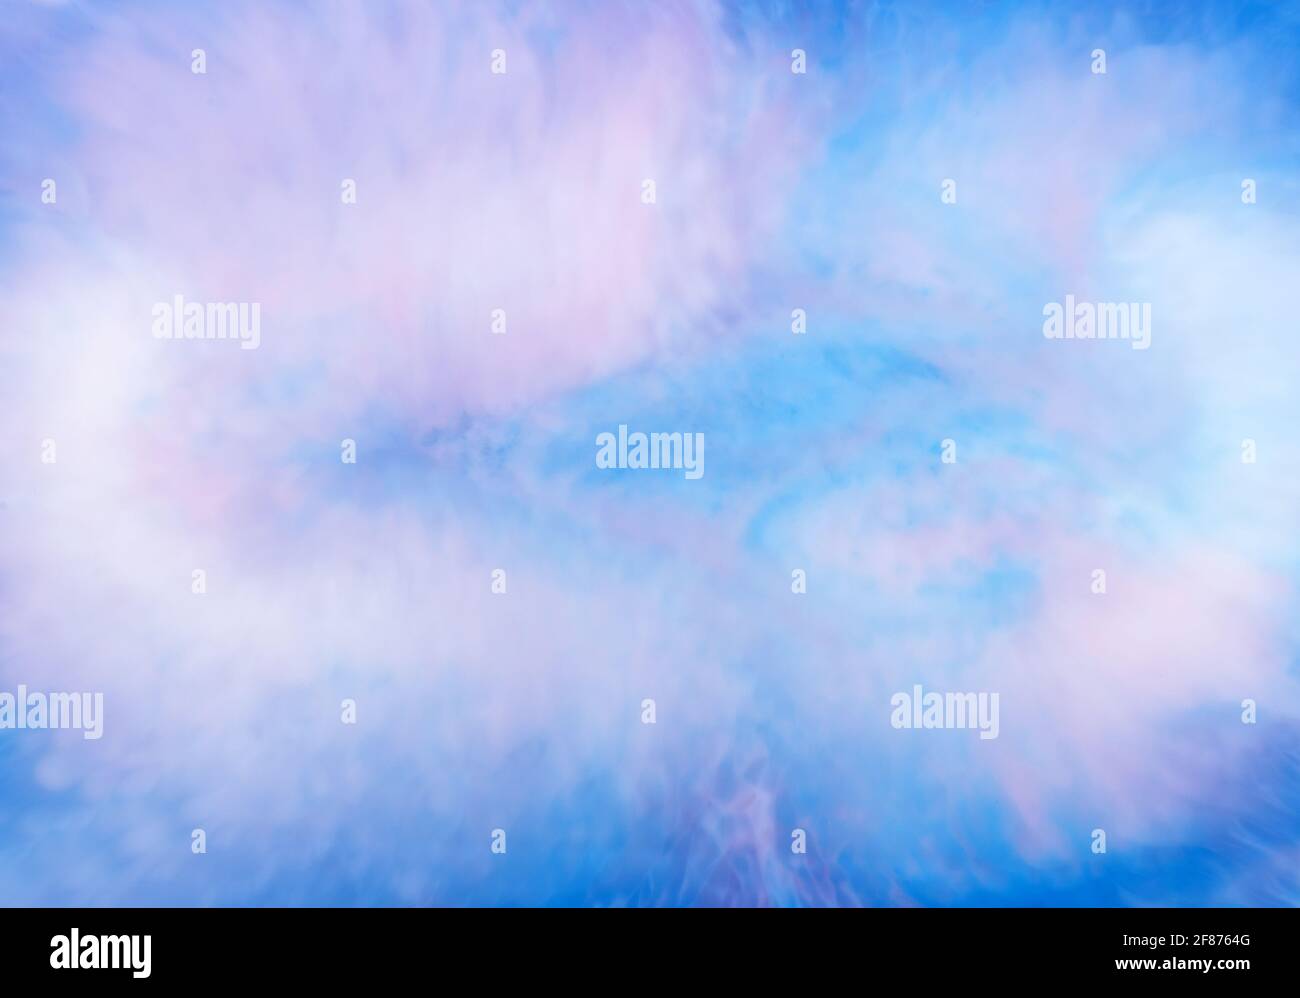 Sfondo etereo modello astratto di fusione di inchiostro blu in acqua con overtones rosa per un modello di design artistico Foto Stock